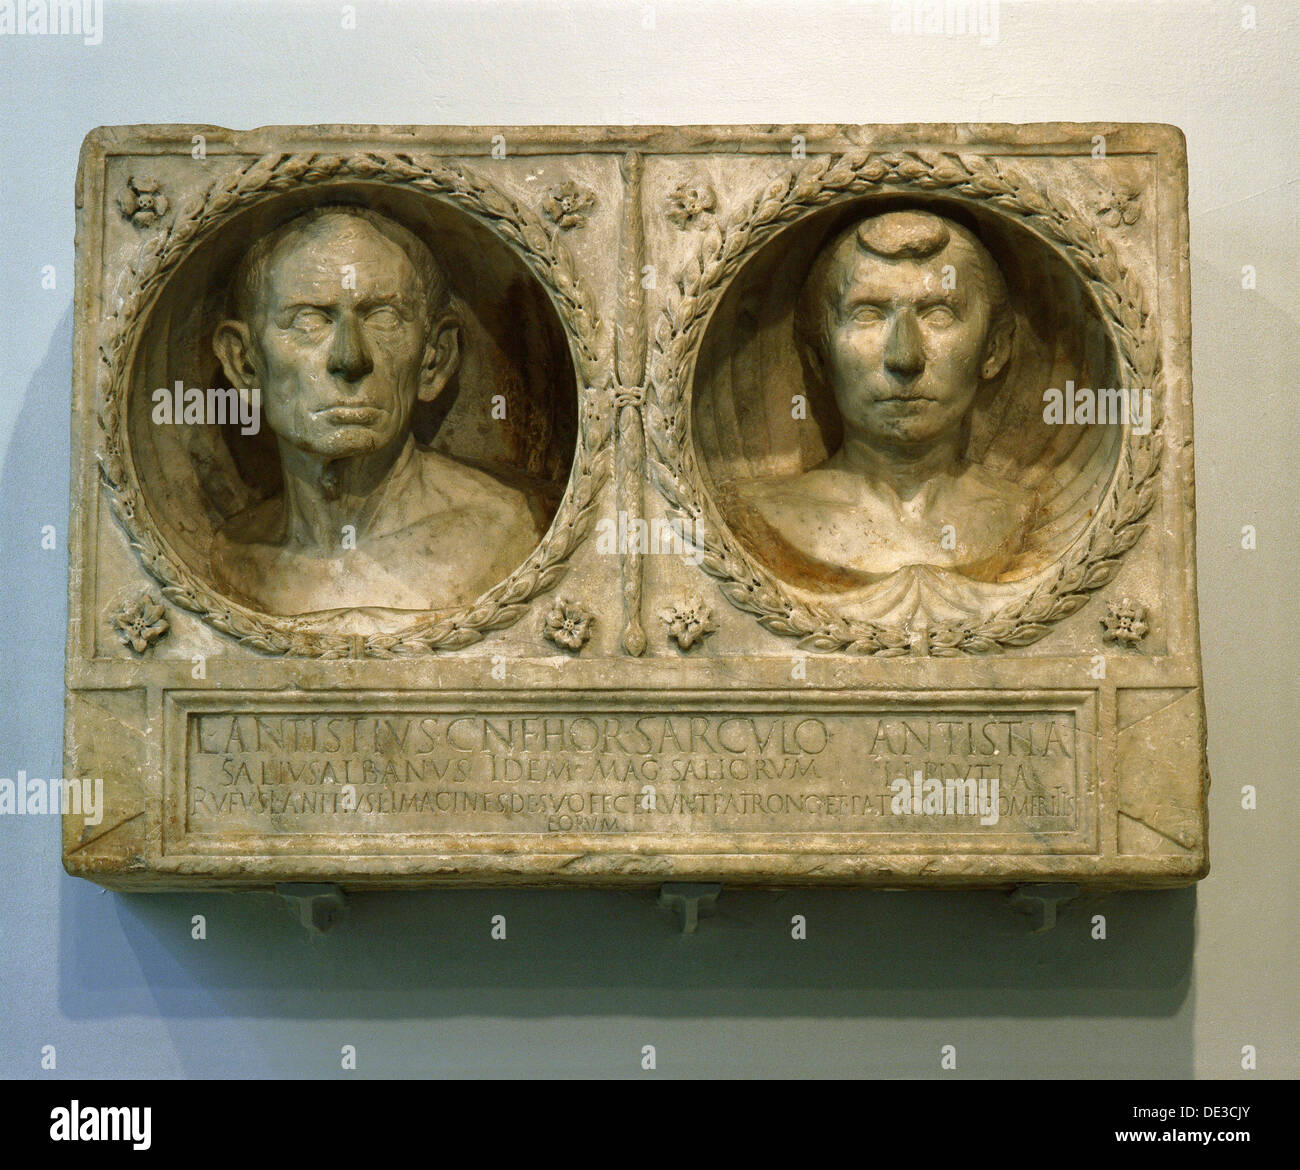 Parte del monumento funerario de Lucius Antistius Sarculo, un sacerdote romano nacido libre de la orden y Salian y su esposa, Antistia Plutia freedwoman. Foto de stock